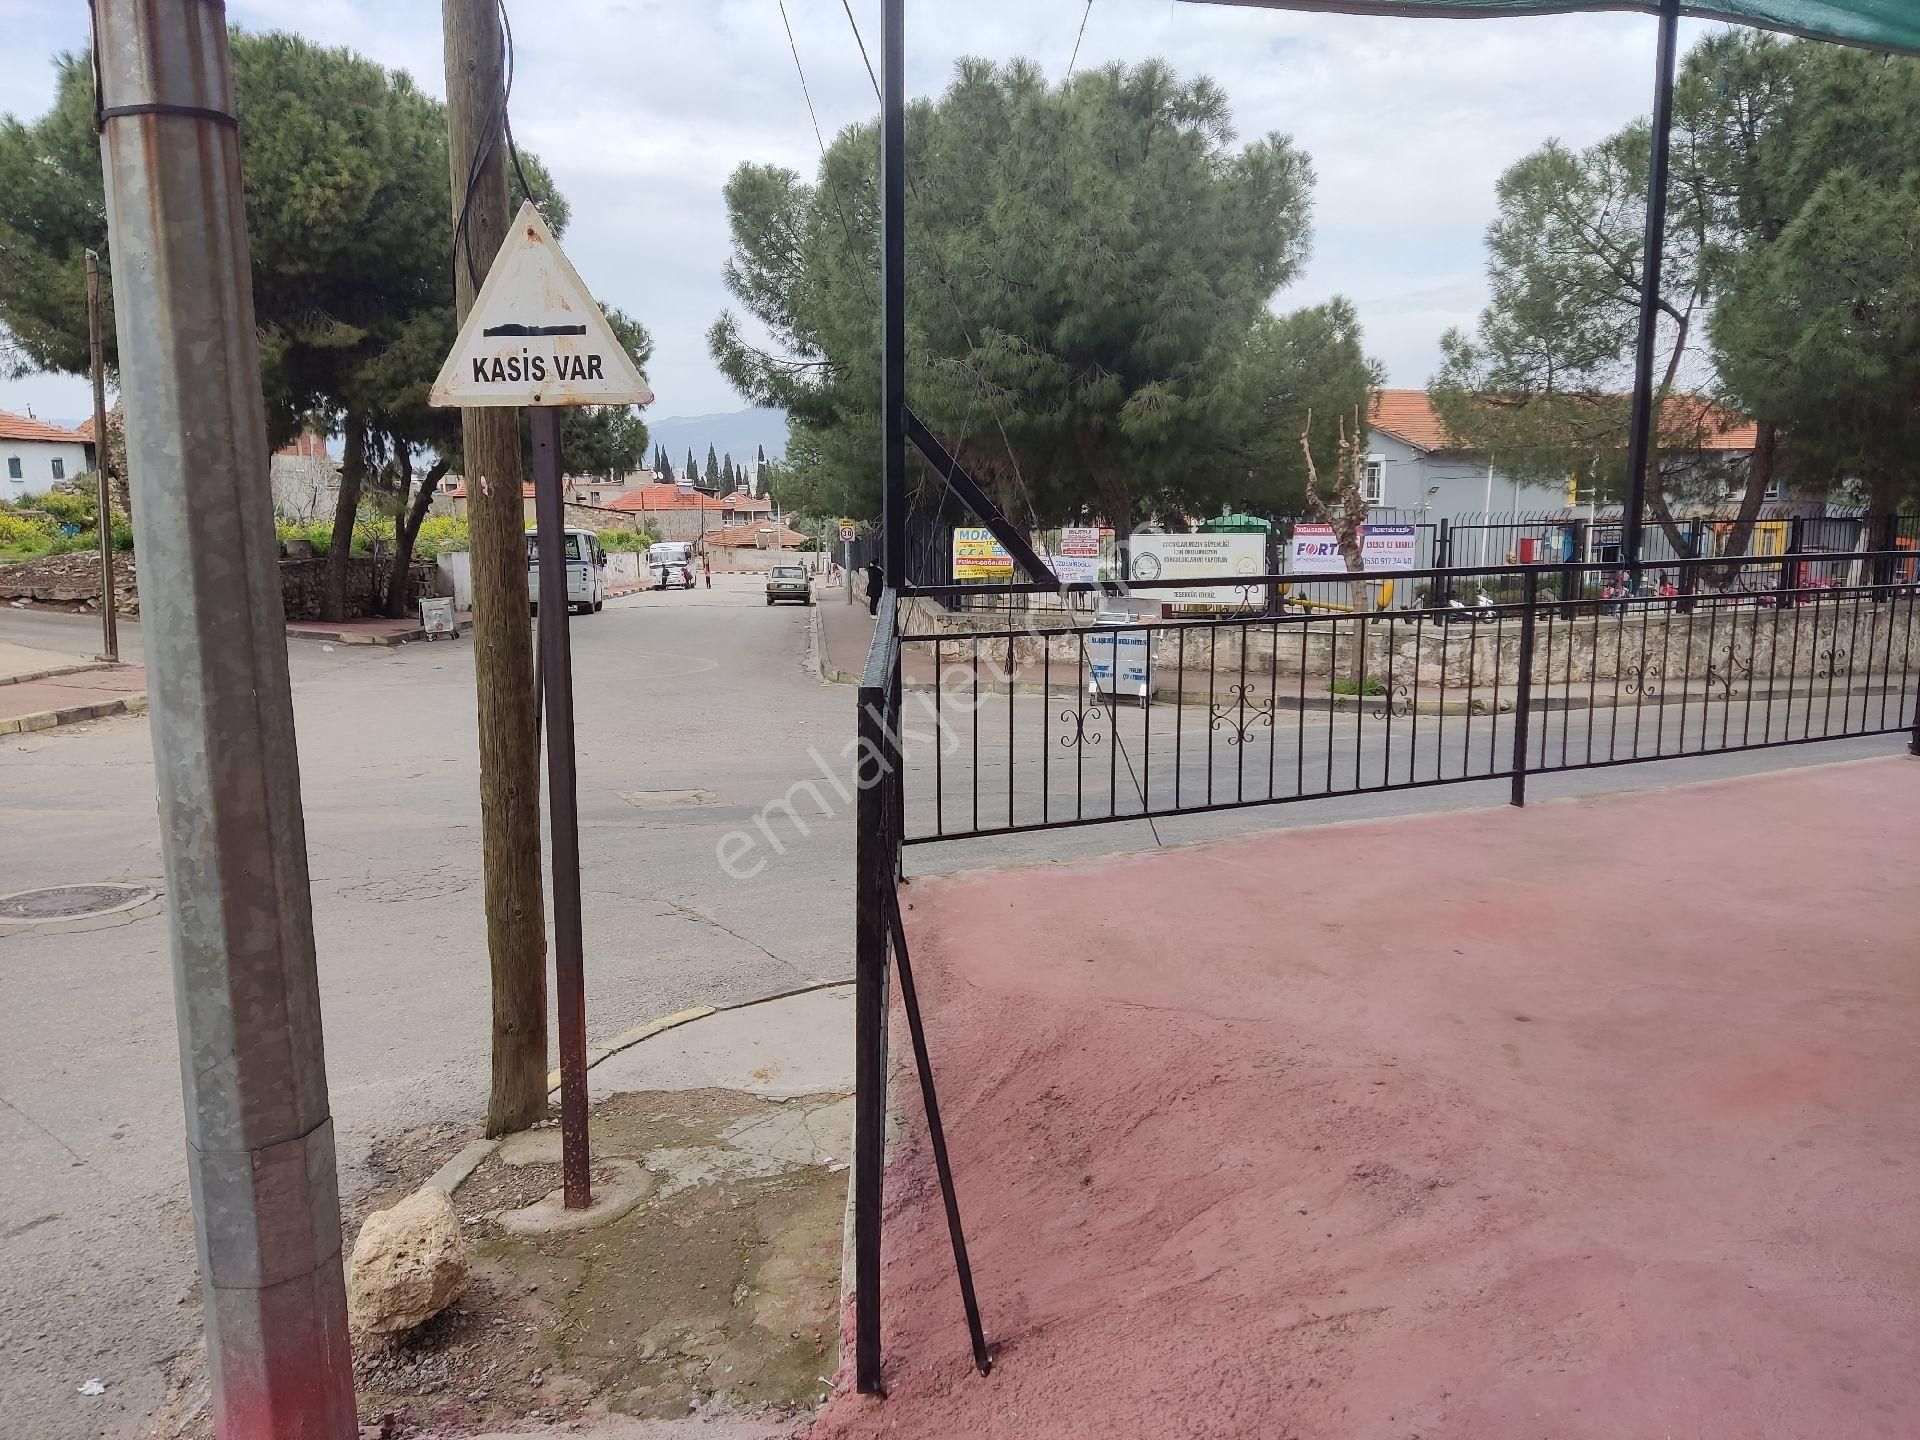 Alaşehir Menderes Kiralık Ofis Alaşehir sarıkız meydanında okul karşısı dükkan büro